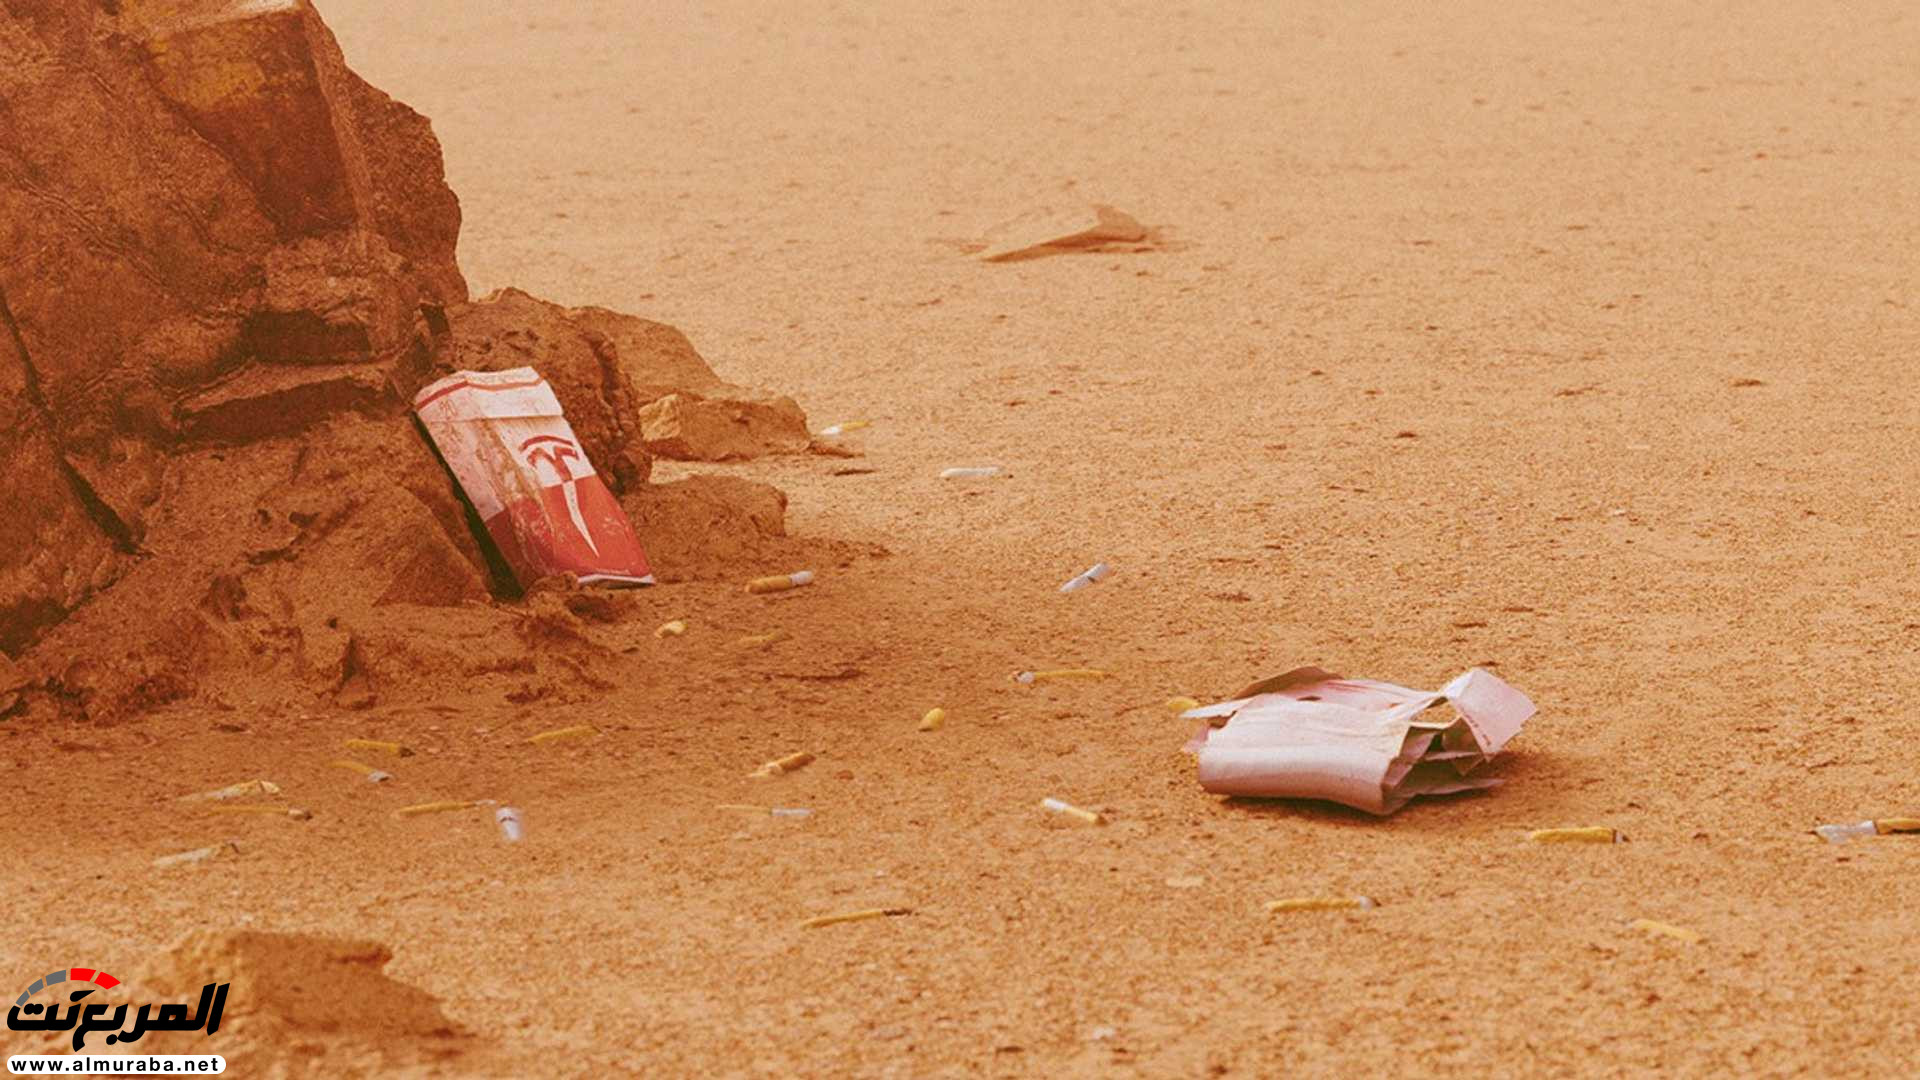 تيسلا رودستر وصلت إلى المريخ في صور تخيلية 17